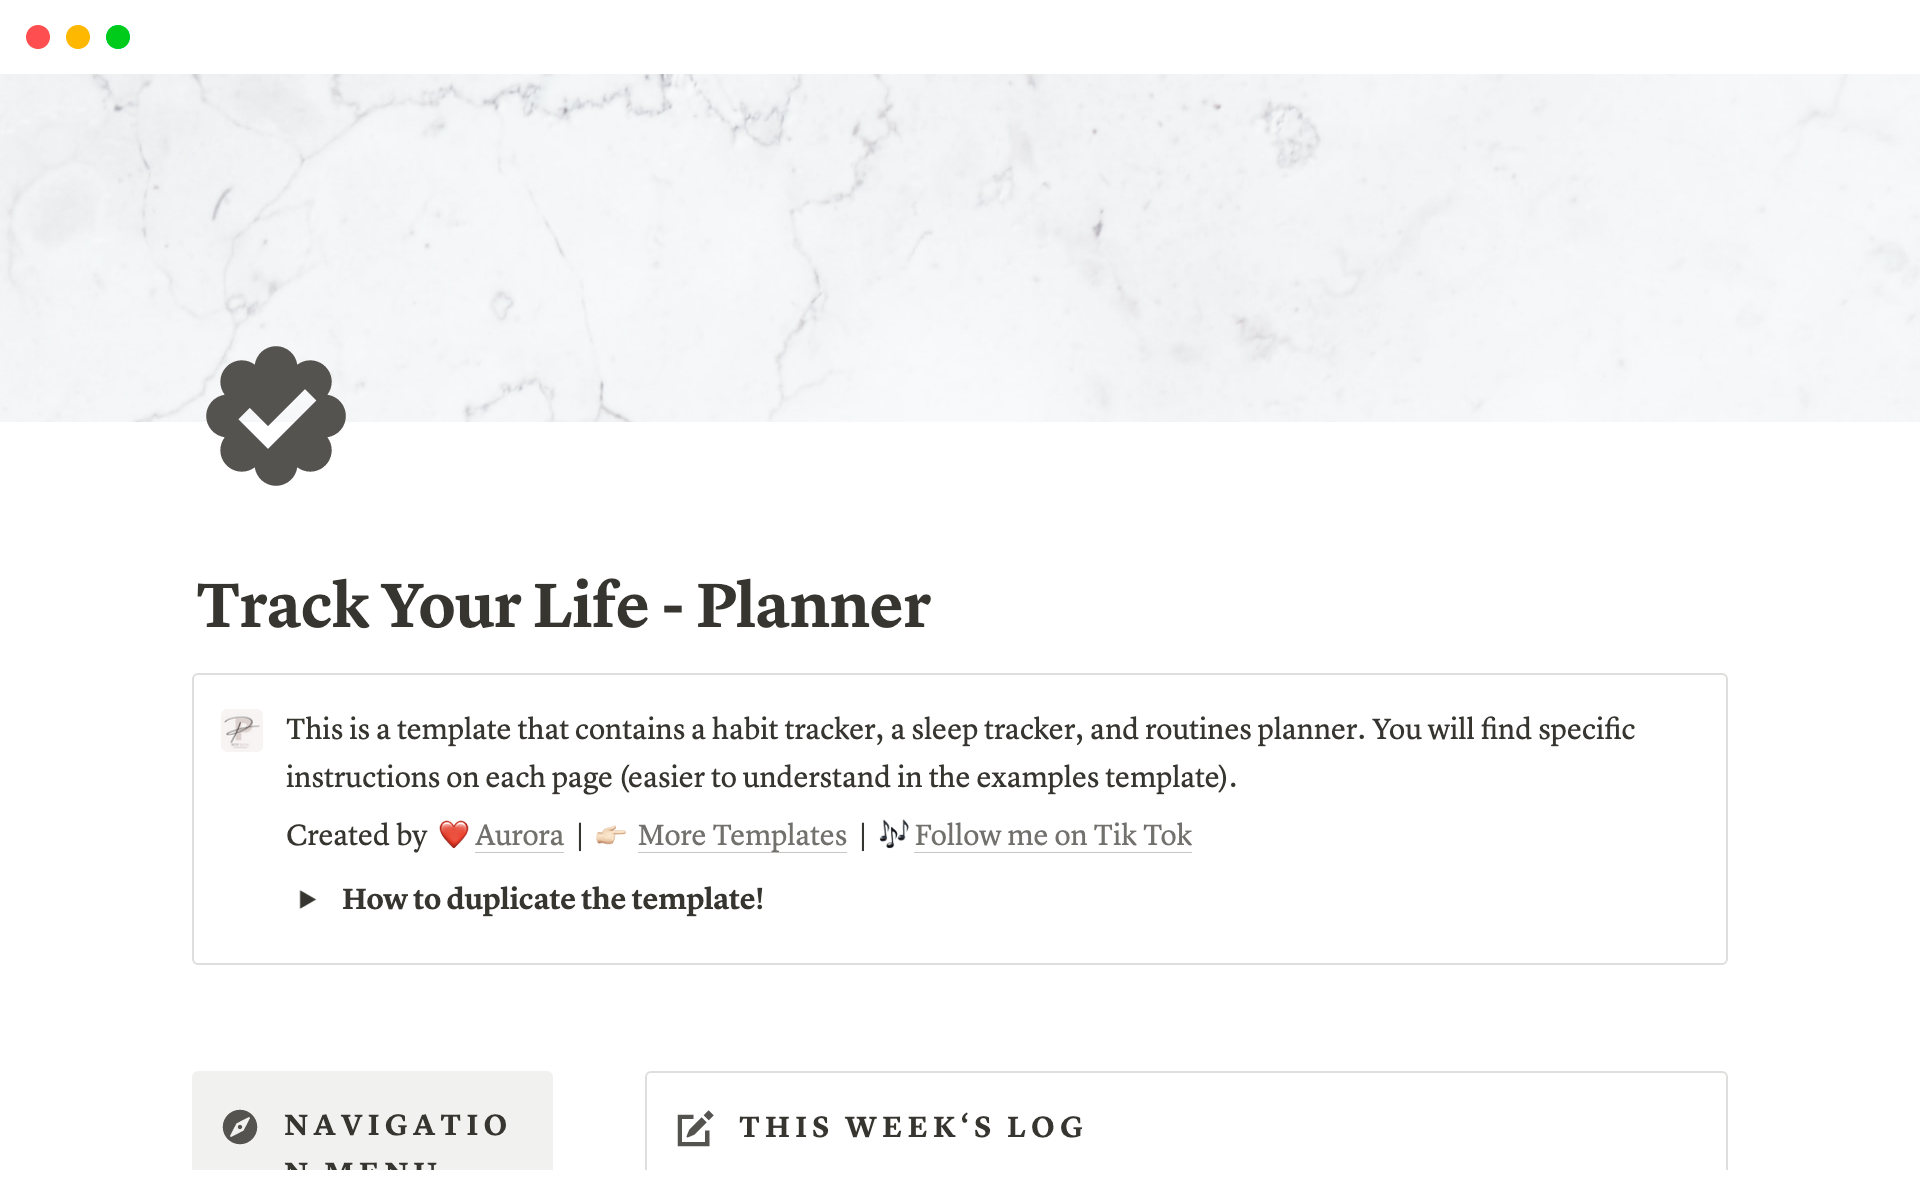 Aperçu du modèle de Track Your Life - Planner